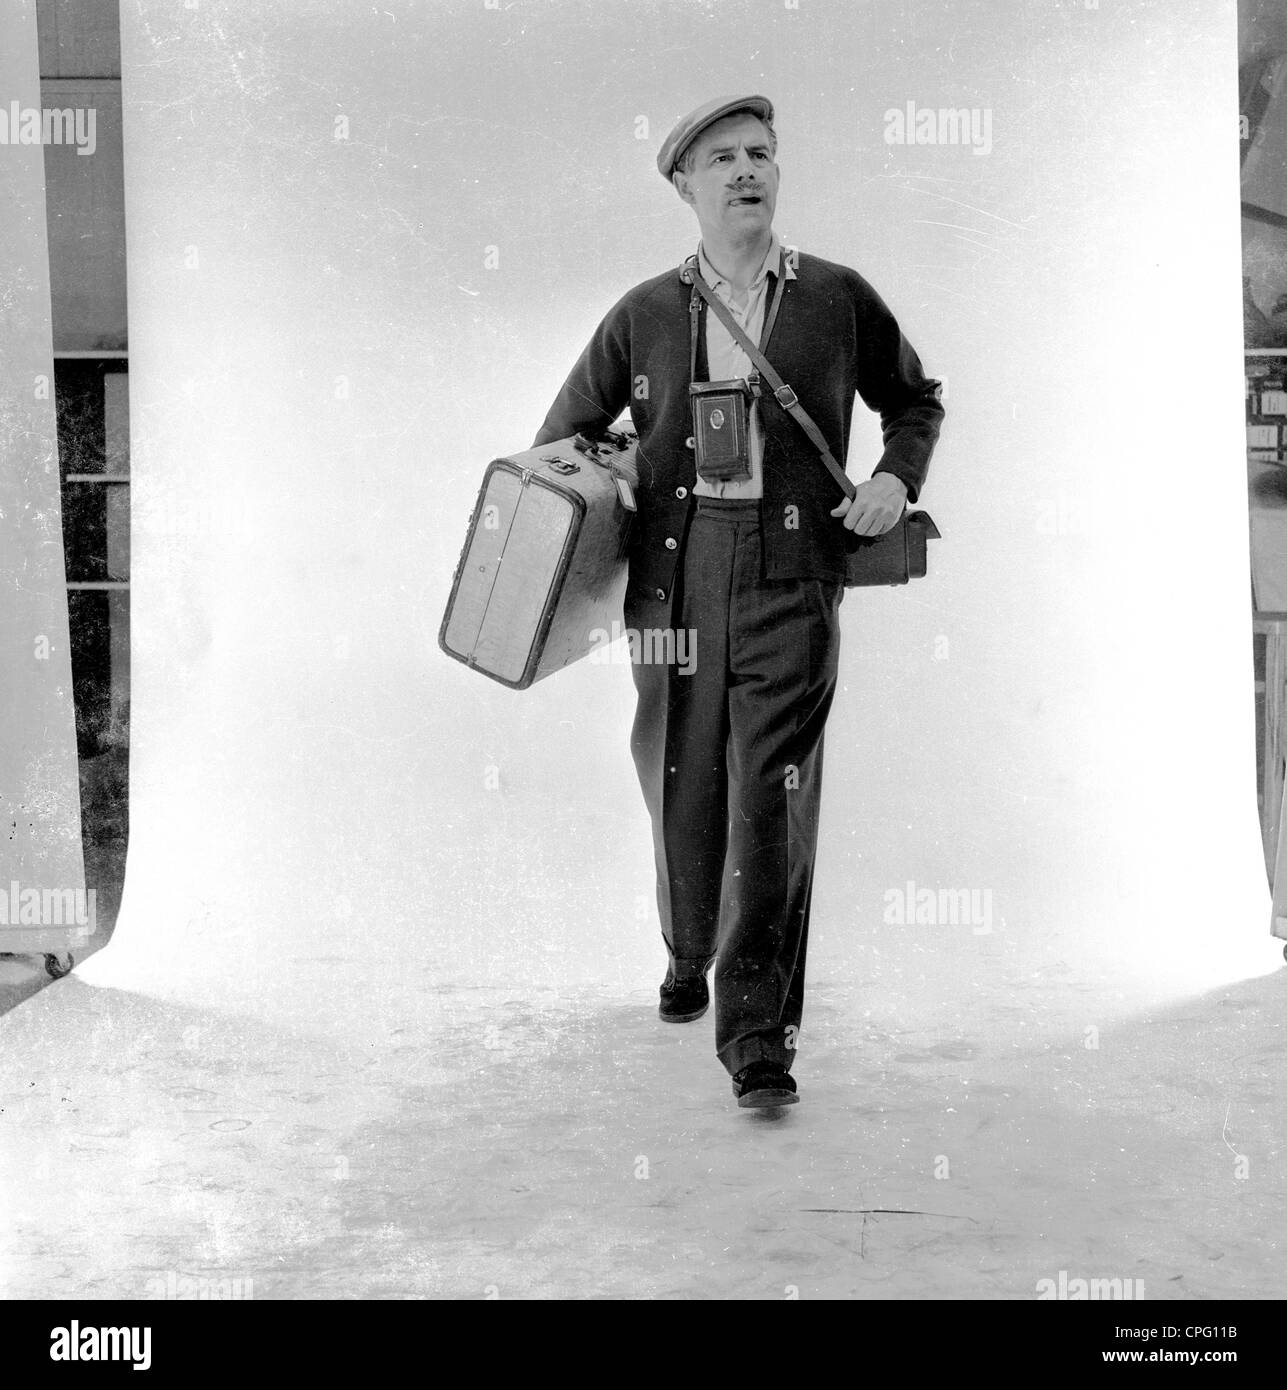 Publicité 1960s. Homme dans un studio photograhique debout contre un écran blanc agissant comme un holographe avec sa valise, appareil photo et sac à bandoulière. Banque D'Images